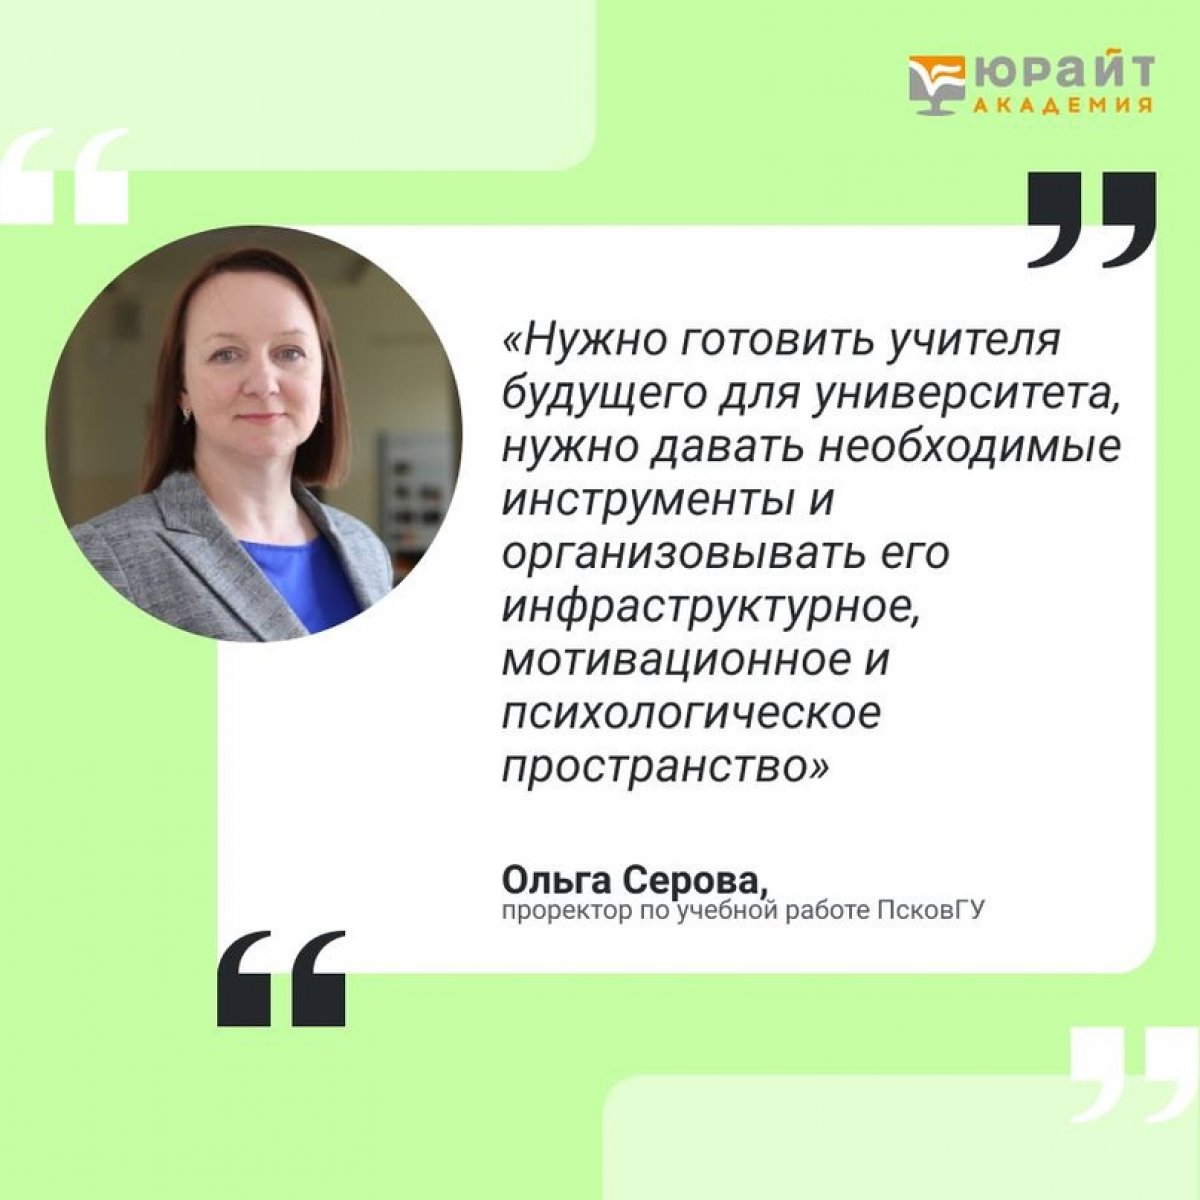 Представители ПсковГУ выступили экспертами на дискуссии о цифровизации образования на образовательной платформе «Юрайт»